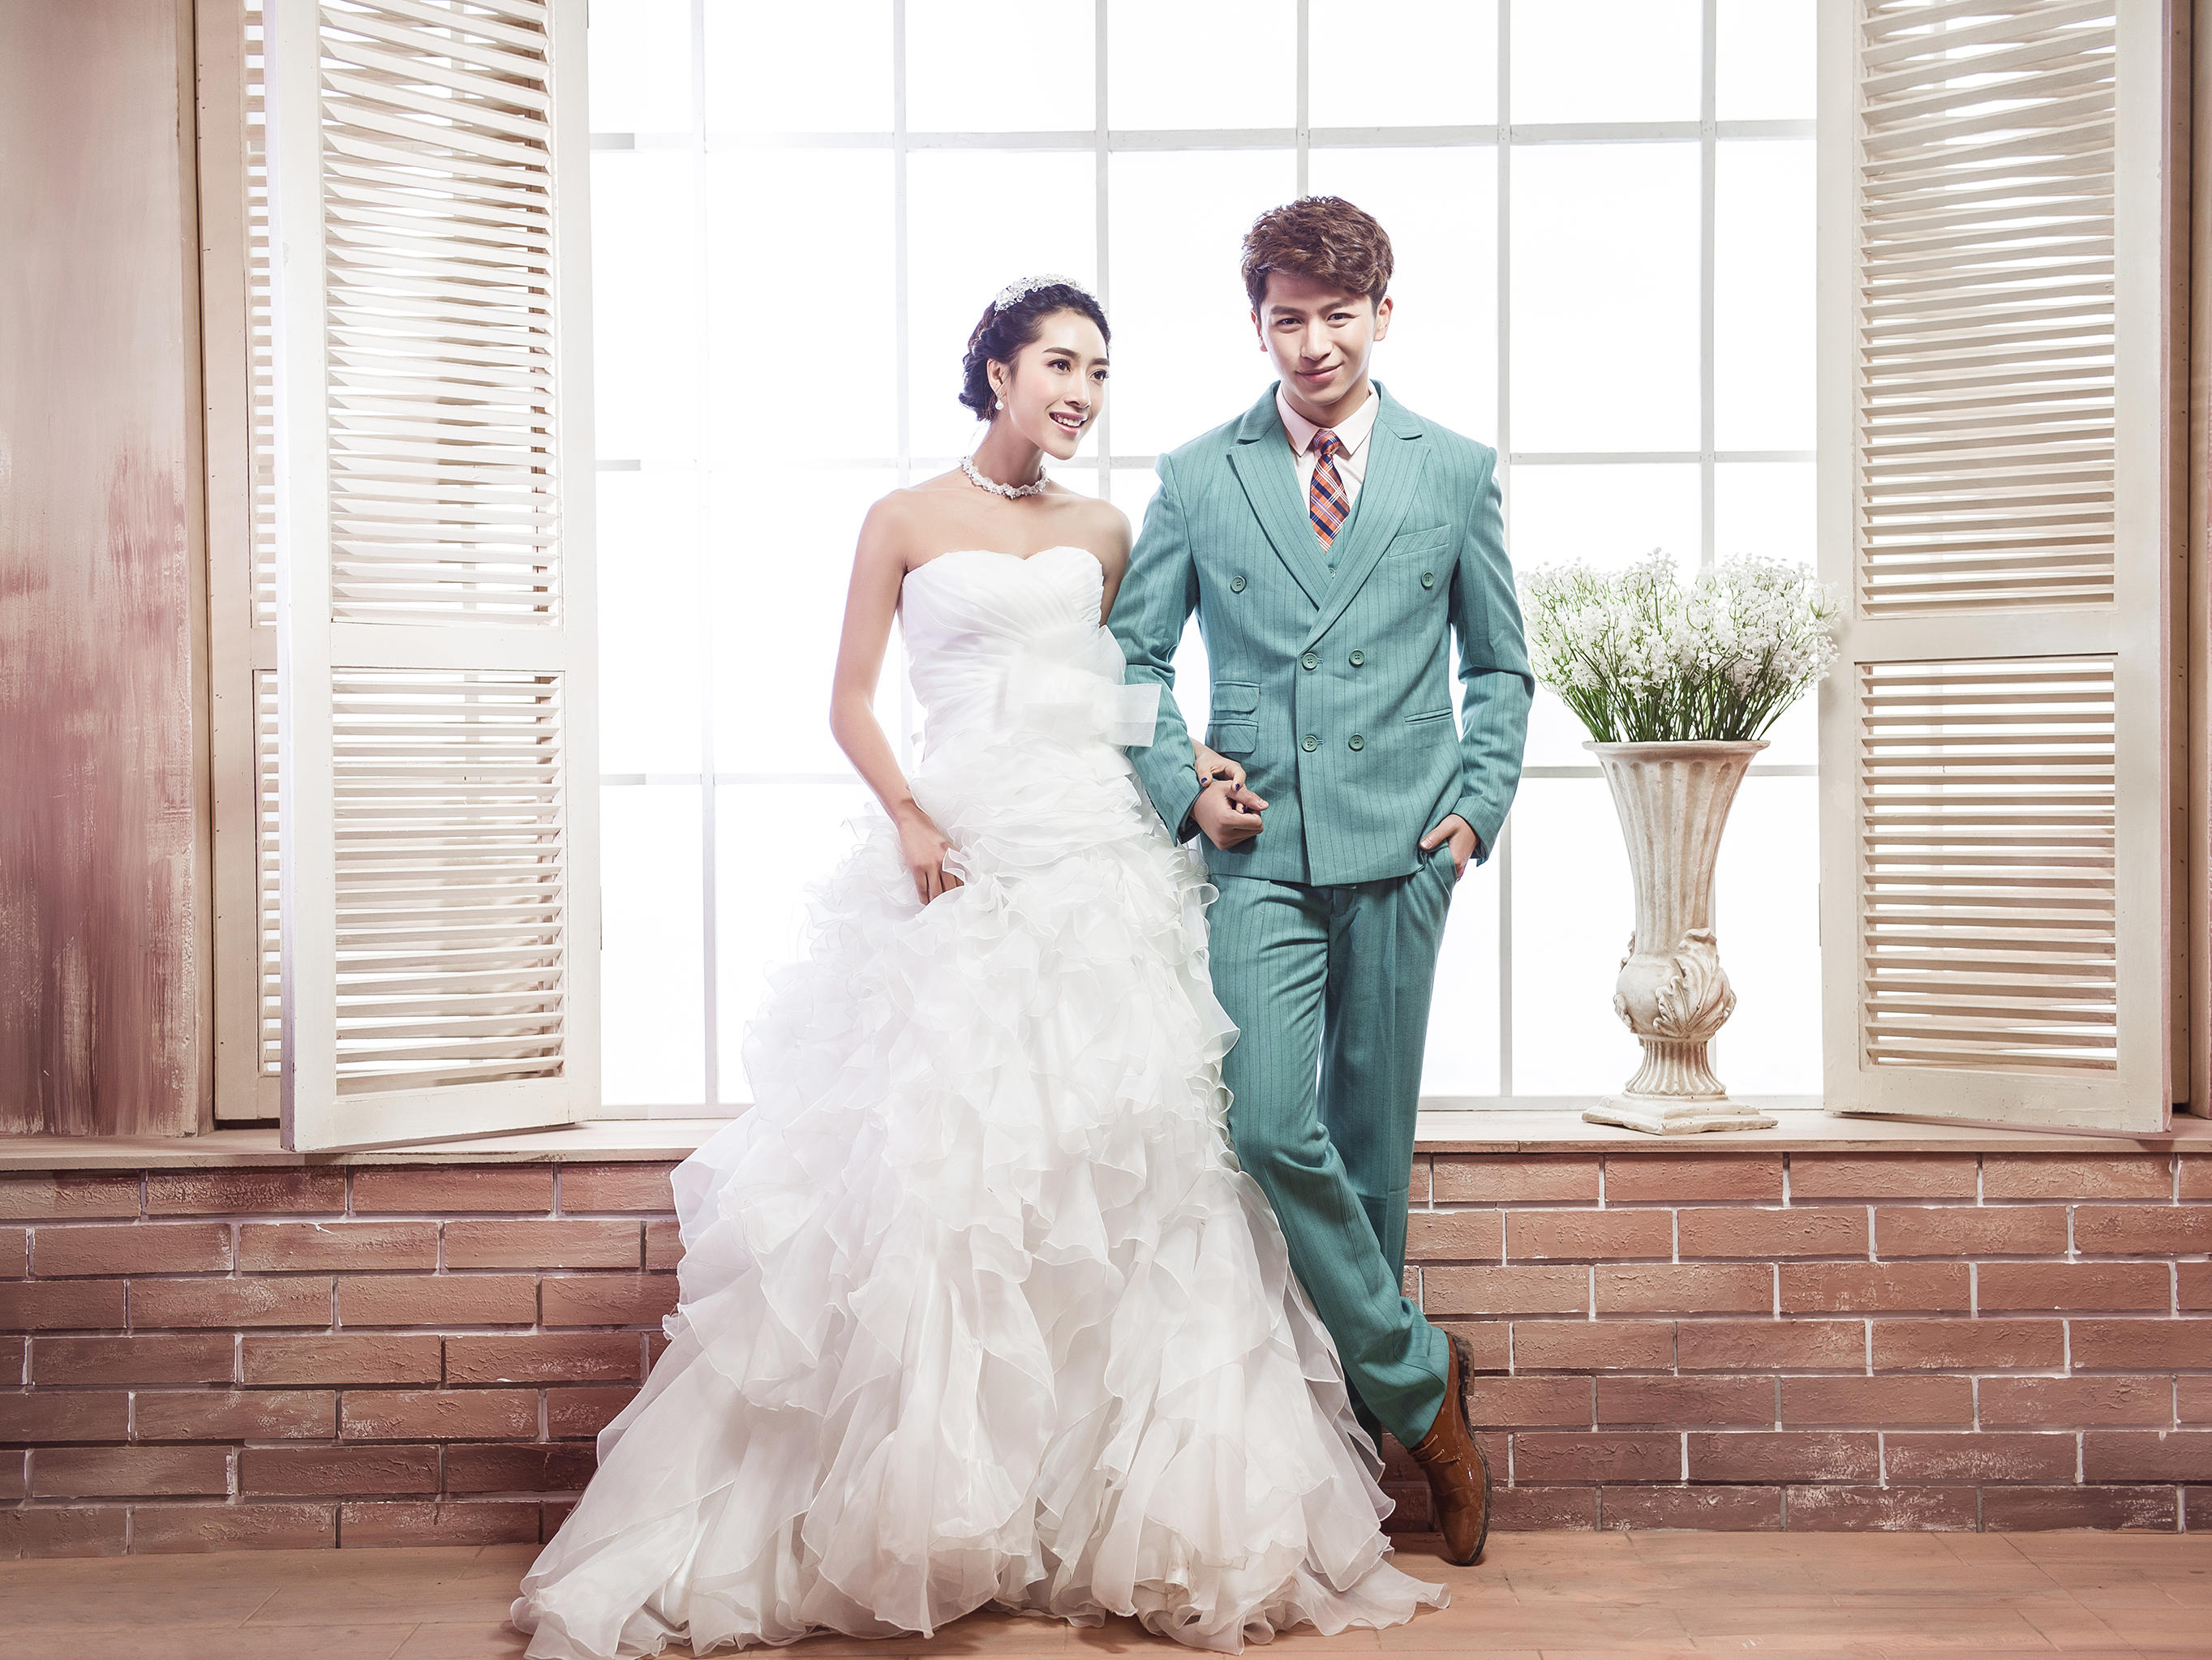 清新韓式婚紗照 讓美麗瞬間永恒